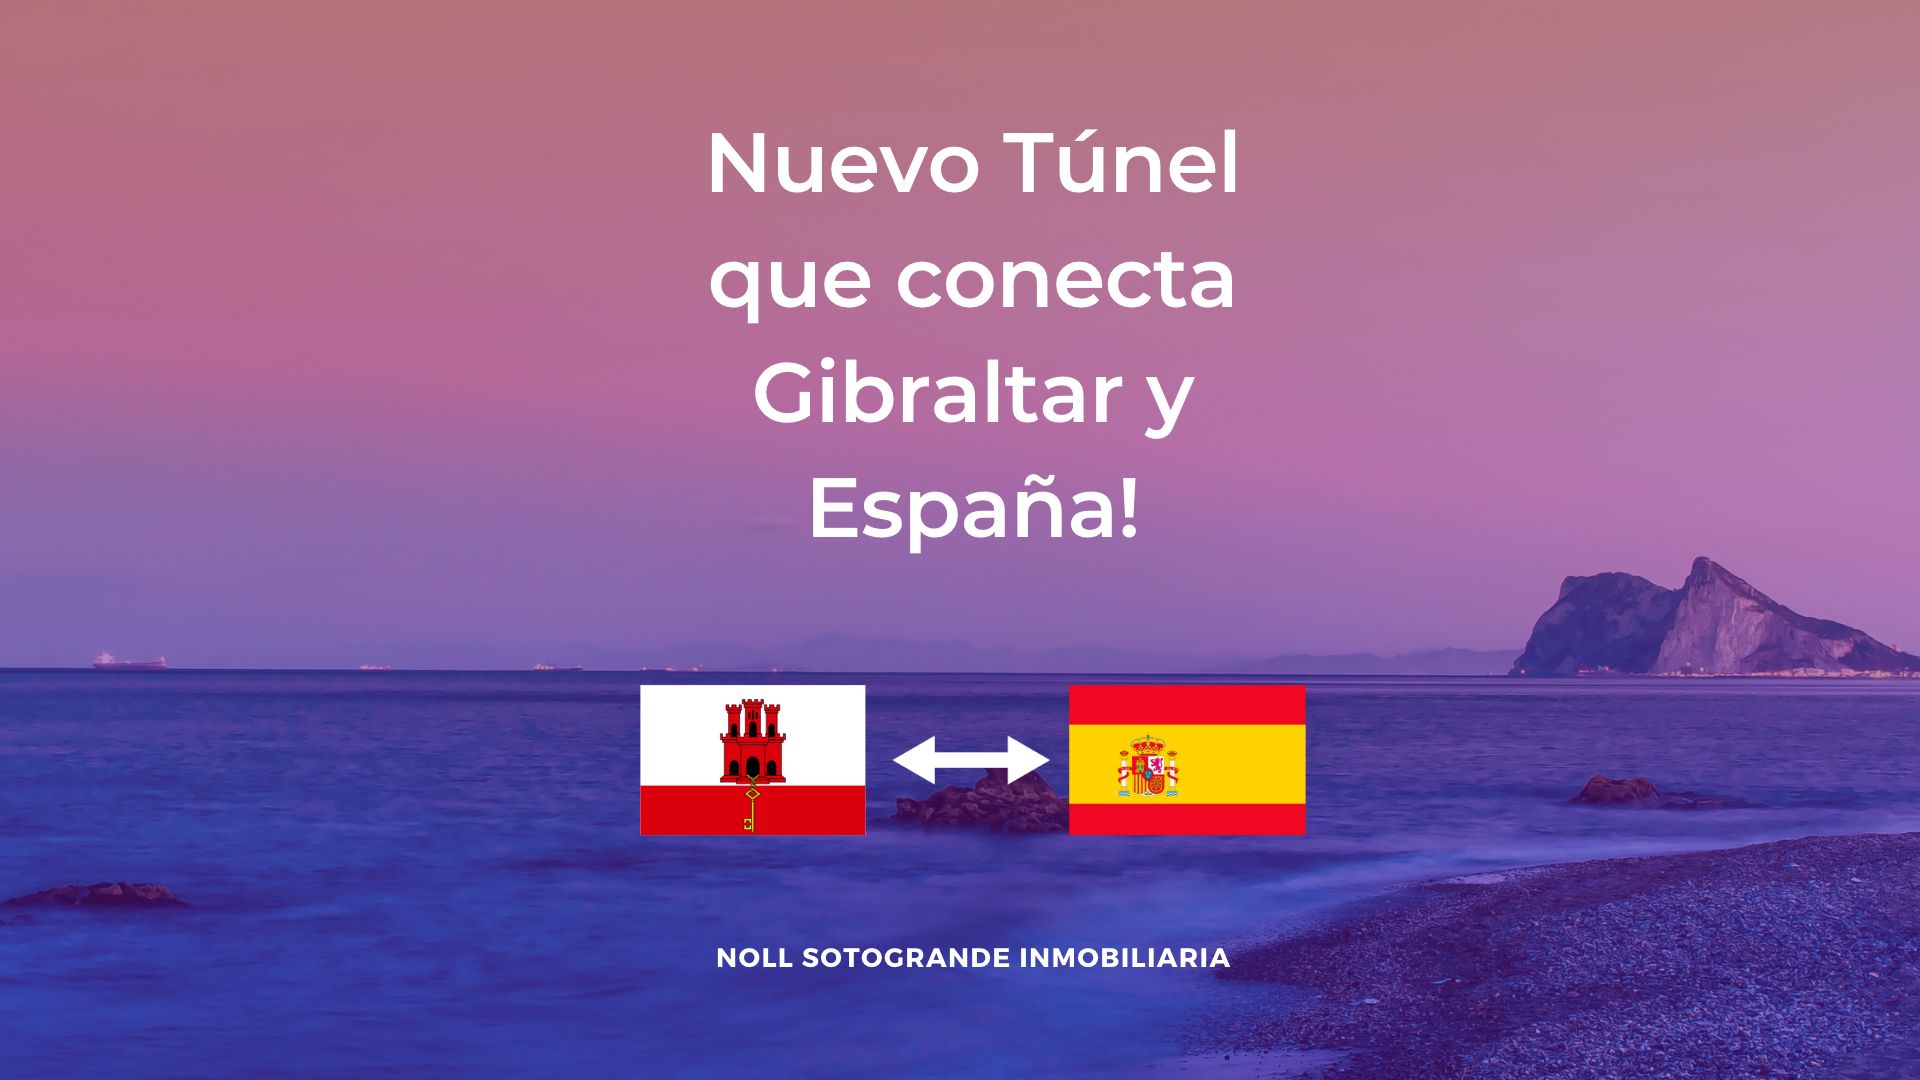 Nuevo tunel que conecta España y Gibraltar - Noll Sotogrande Inmobiliaria 1